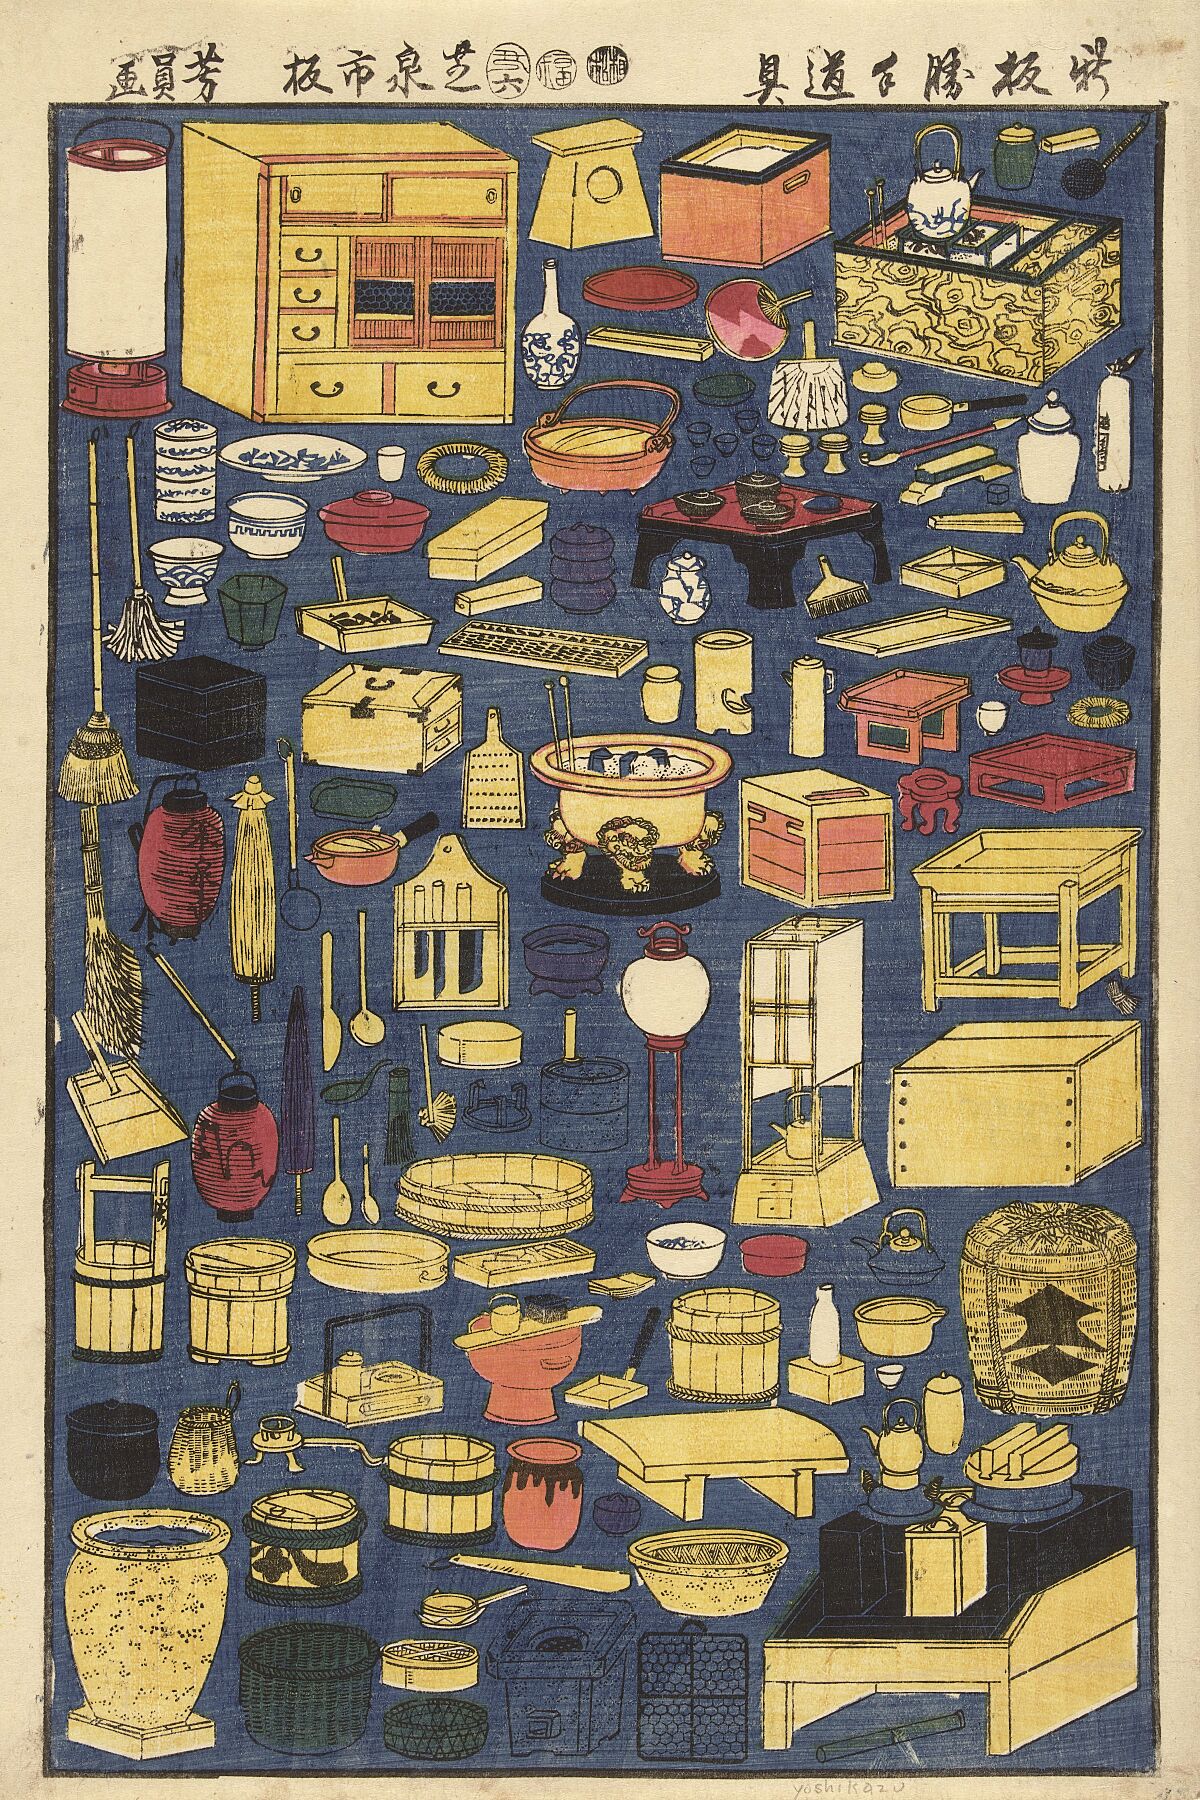 Miscellaneous Household Supplies, Utagawa Yoshikazu, 1853